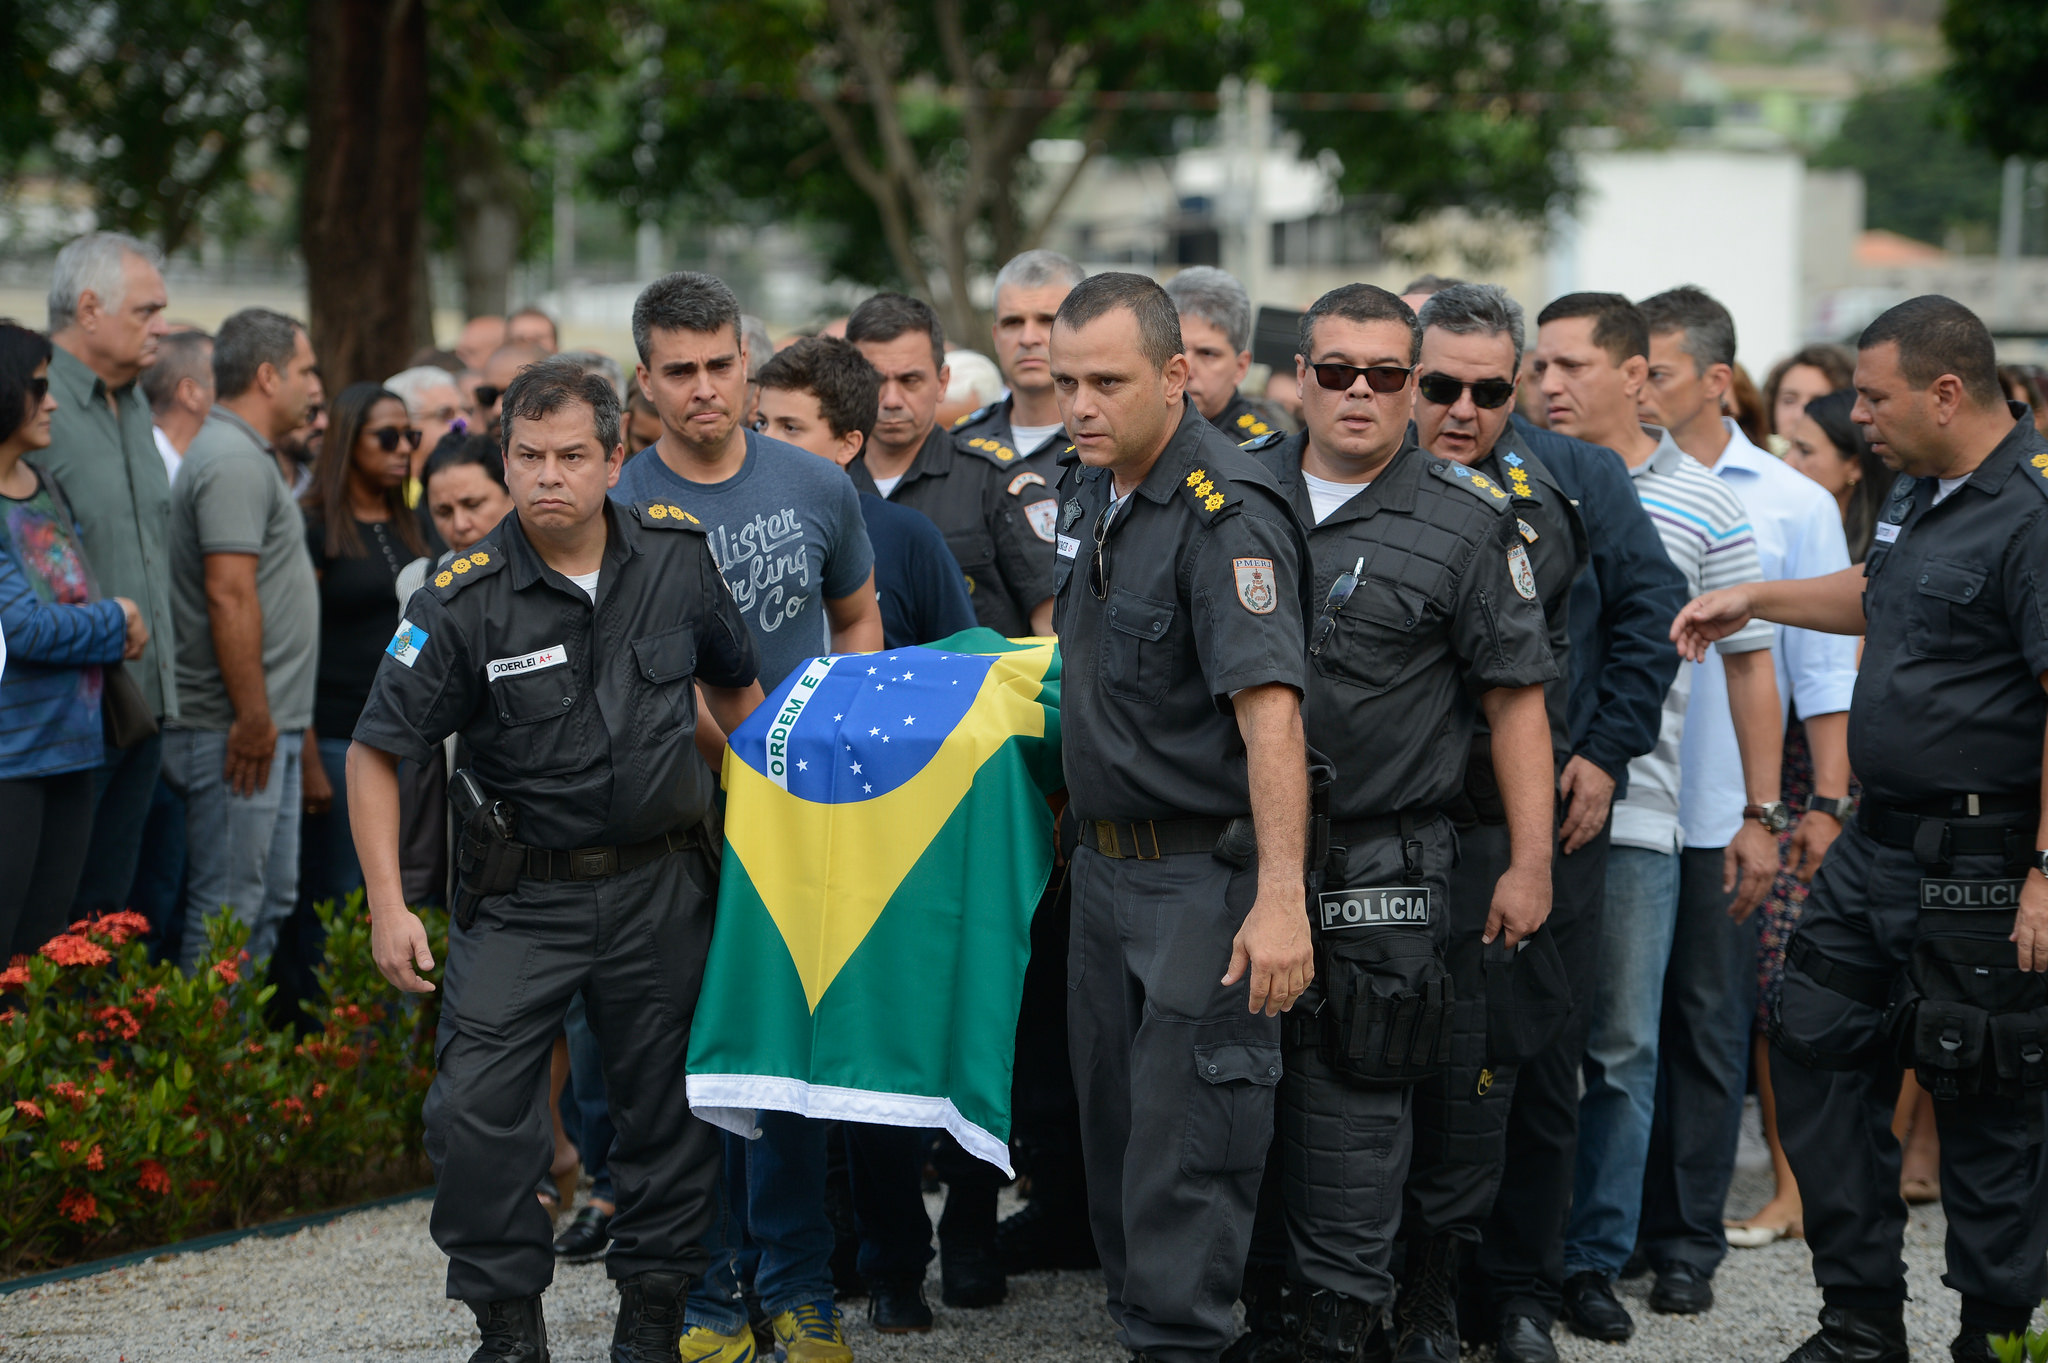 Tenente-coronel Luiz Gustavo Teixeira, de 48 anos, foi enterrado com honras militares no cemitério Jardim da Saudade